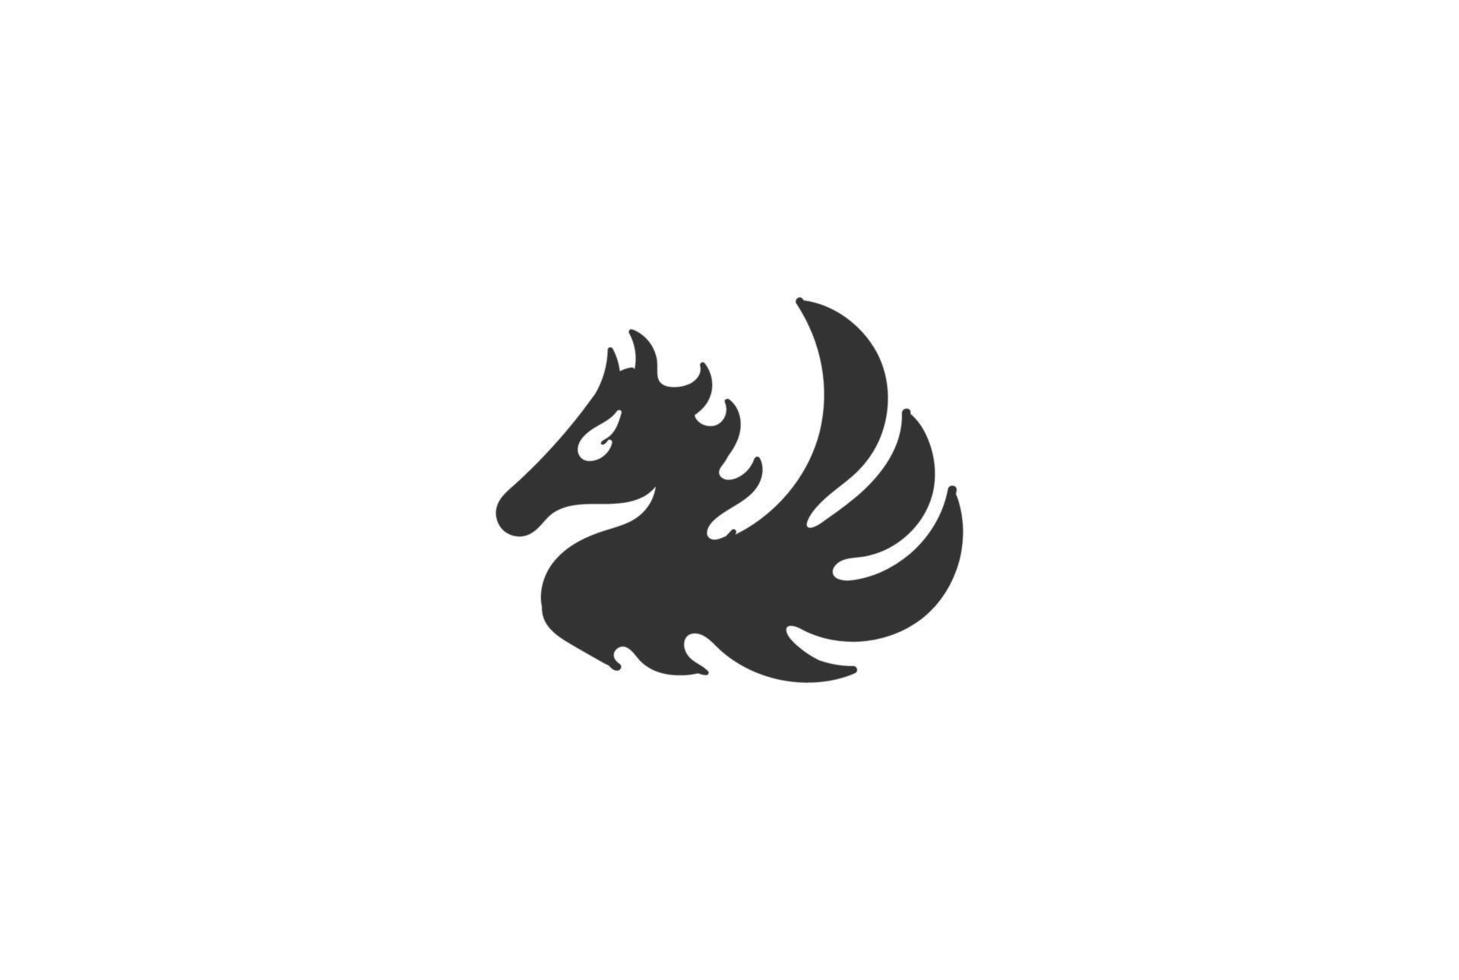 ali di drago dello stallone del cavallo tribale della fiamma del fuoco per il vettore di progettazione del logo della nave vichinga